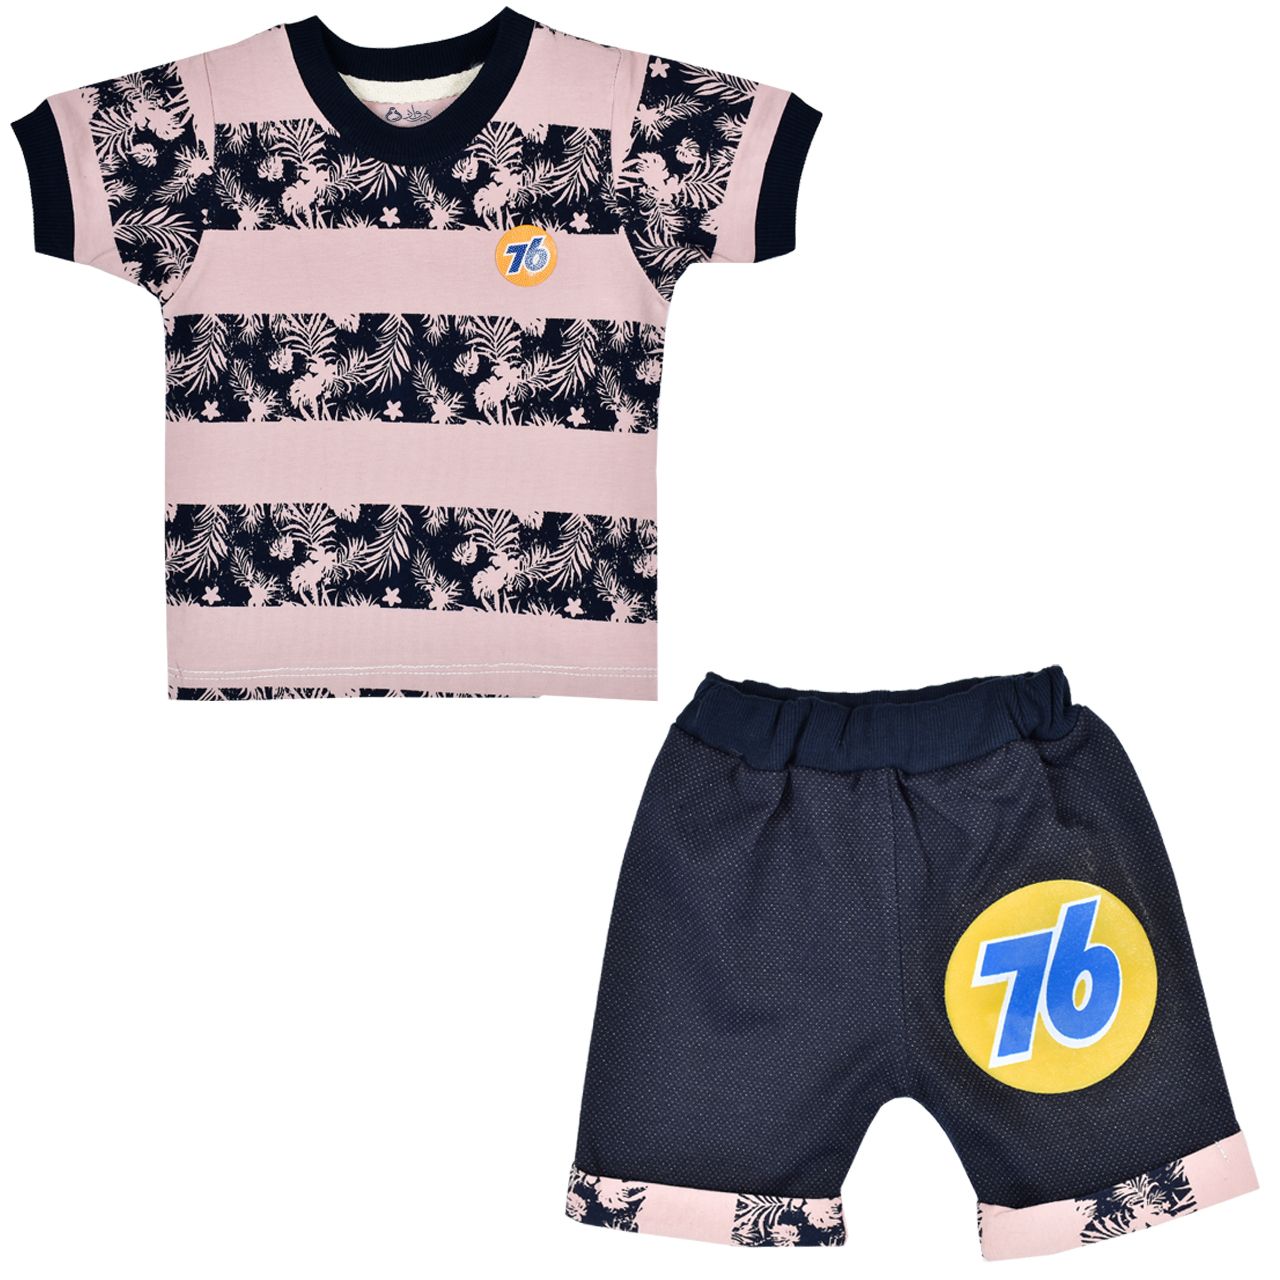 ست تی شرت و شلوارک نوزادی نیروان مدل 1016 -1